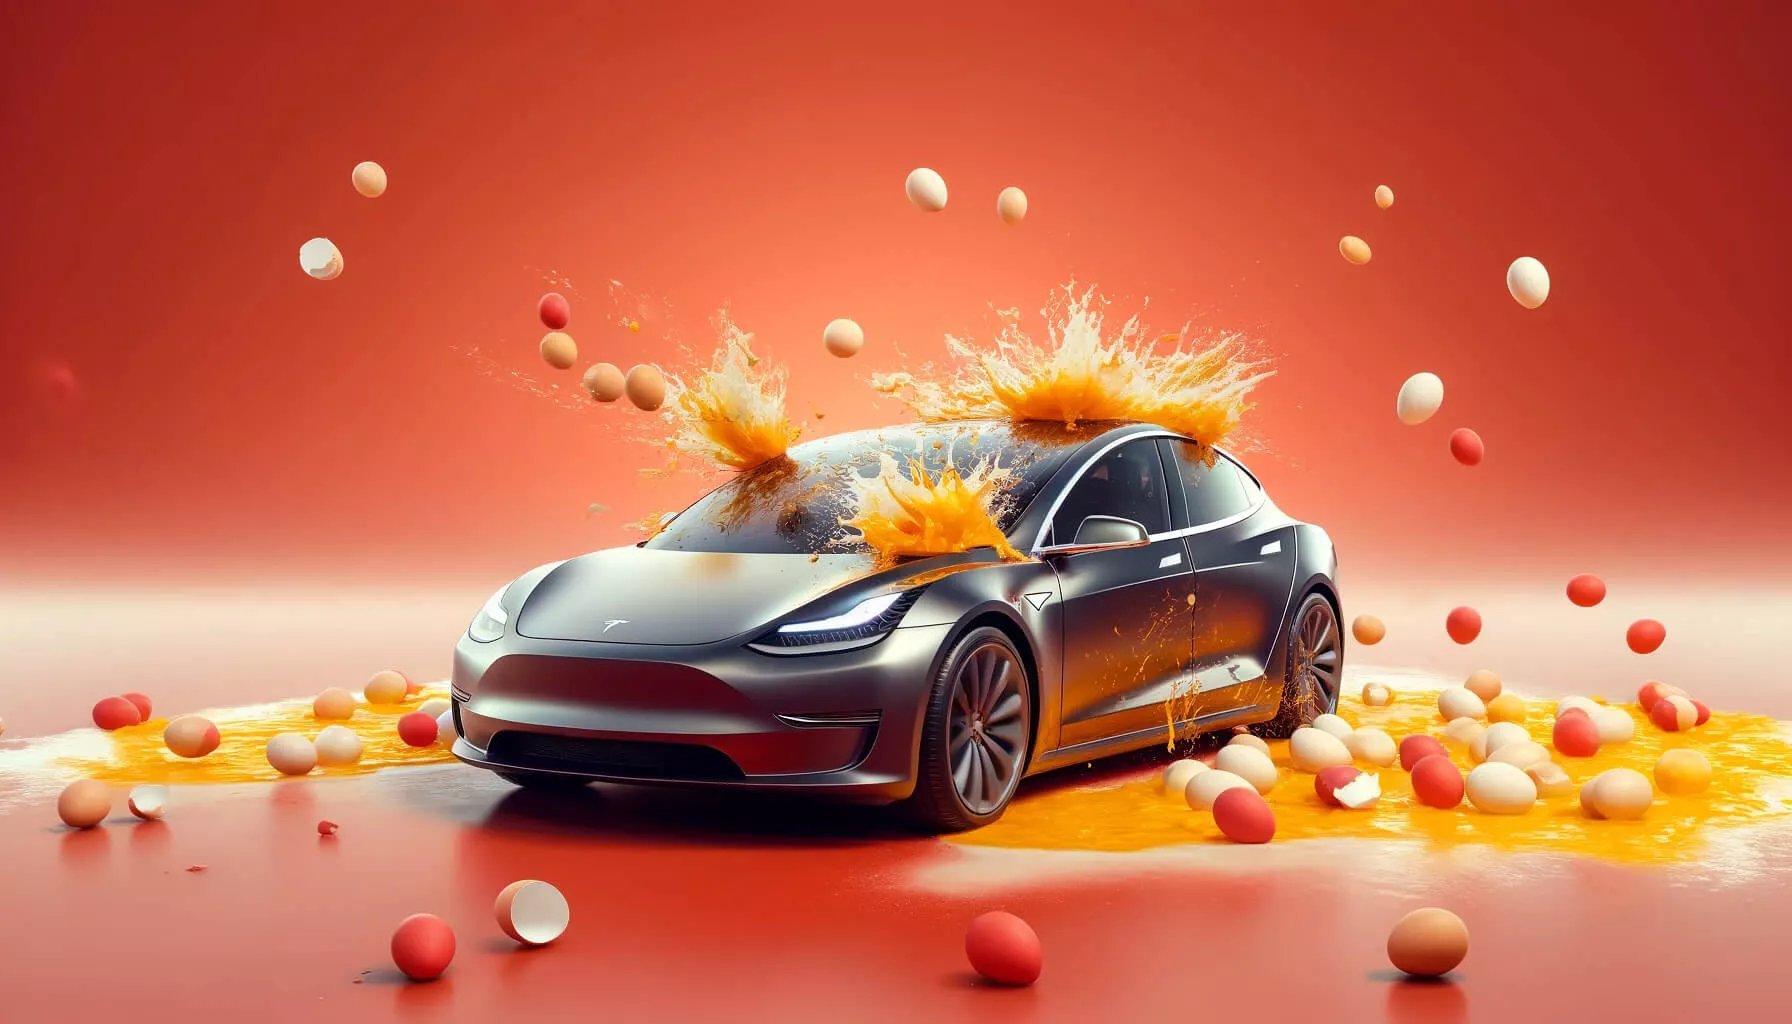 Eier-Attacke auf Ihr Auto? Sofortmaßnahmen und schnelle Reinigung!